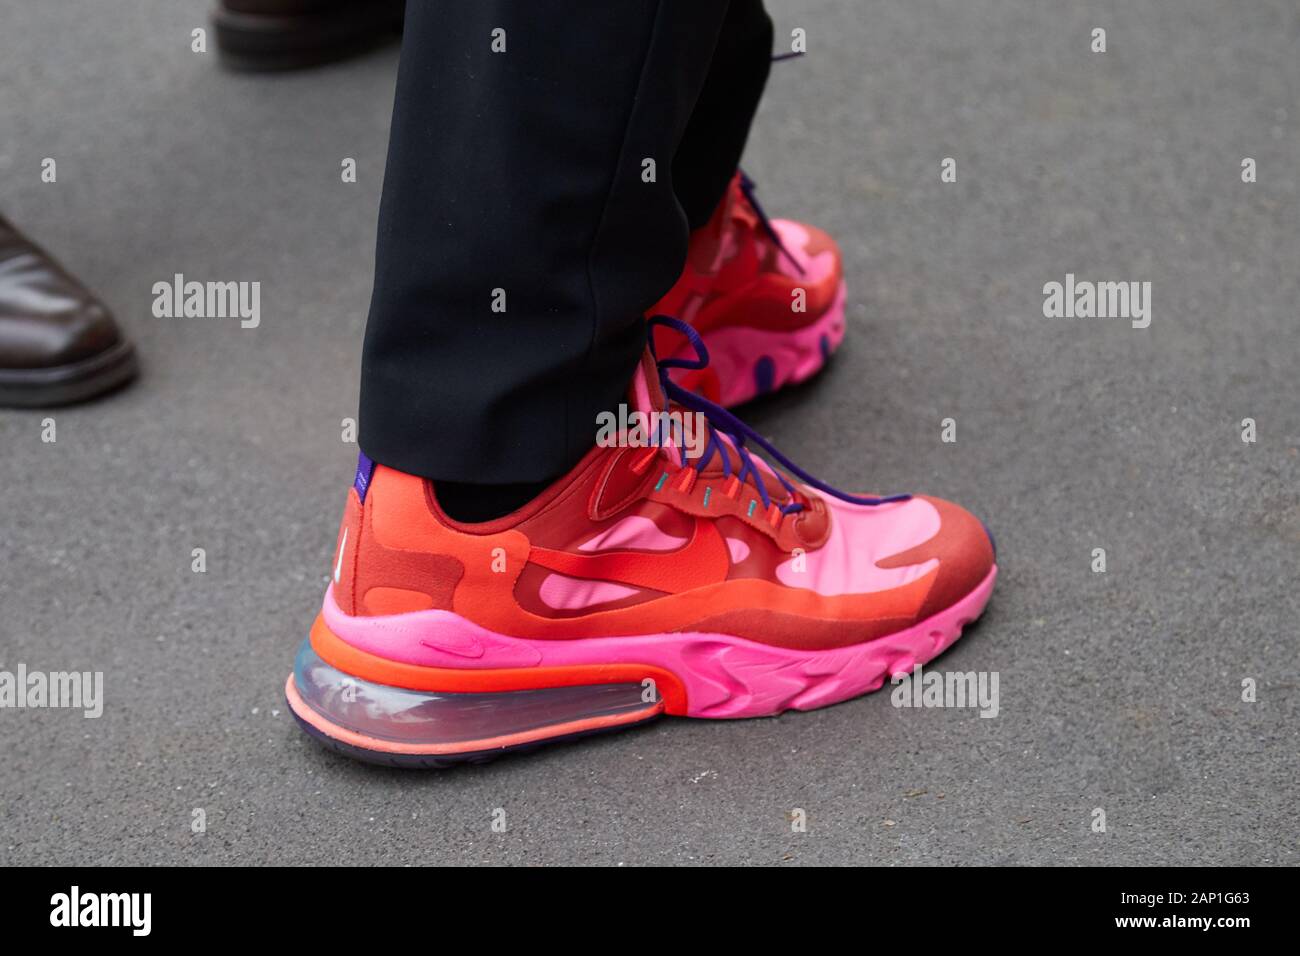 Milán, Italia - 14 de enero de 2019: el hombre rojo y rosa zapatillas Nike antes de Marco de Vincenzo Fashion Show, la Semana de la moda de Milán street style